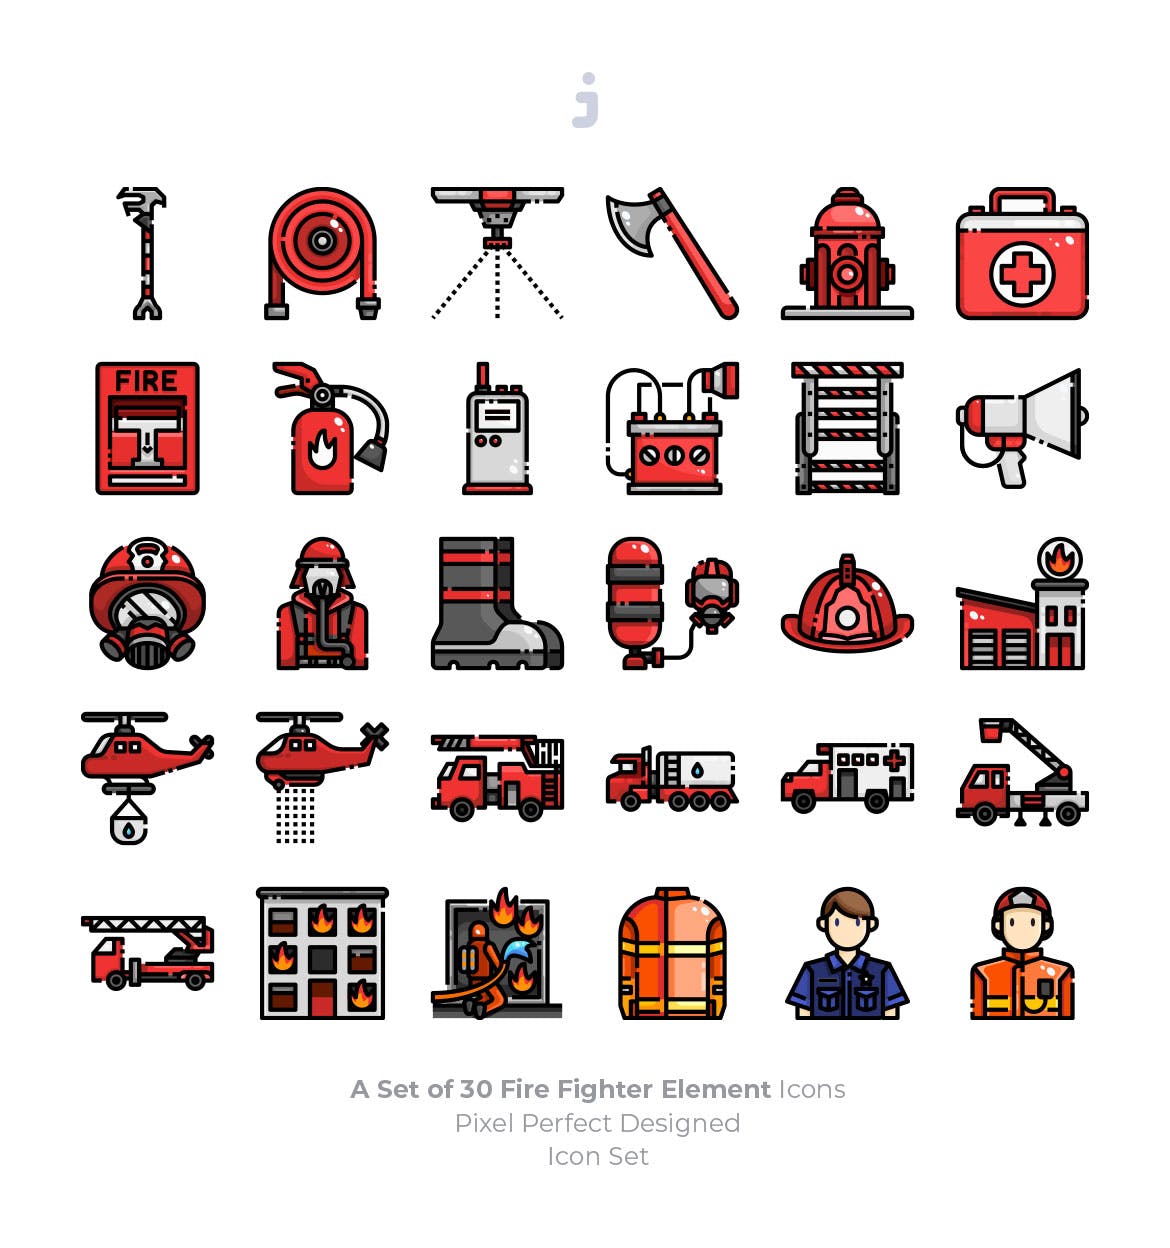  30消防队员元素线性图标源文件下载30 Fire Fighter Icons插图